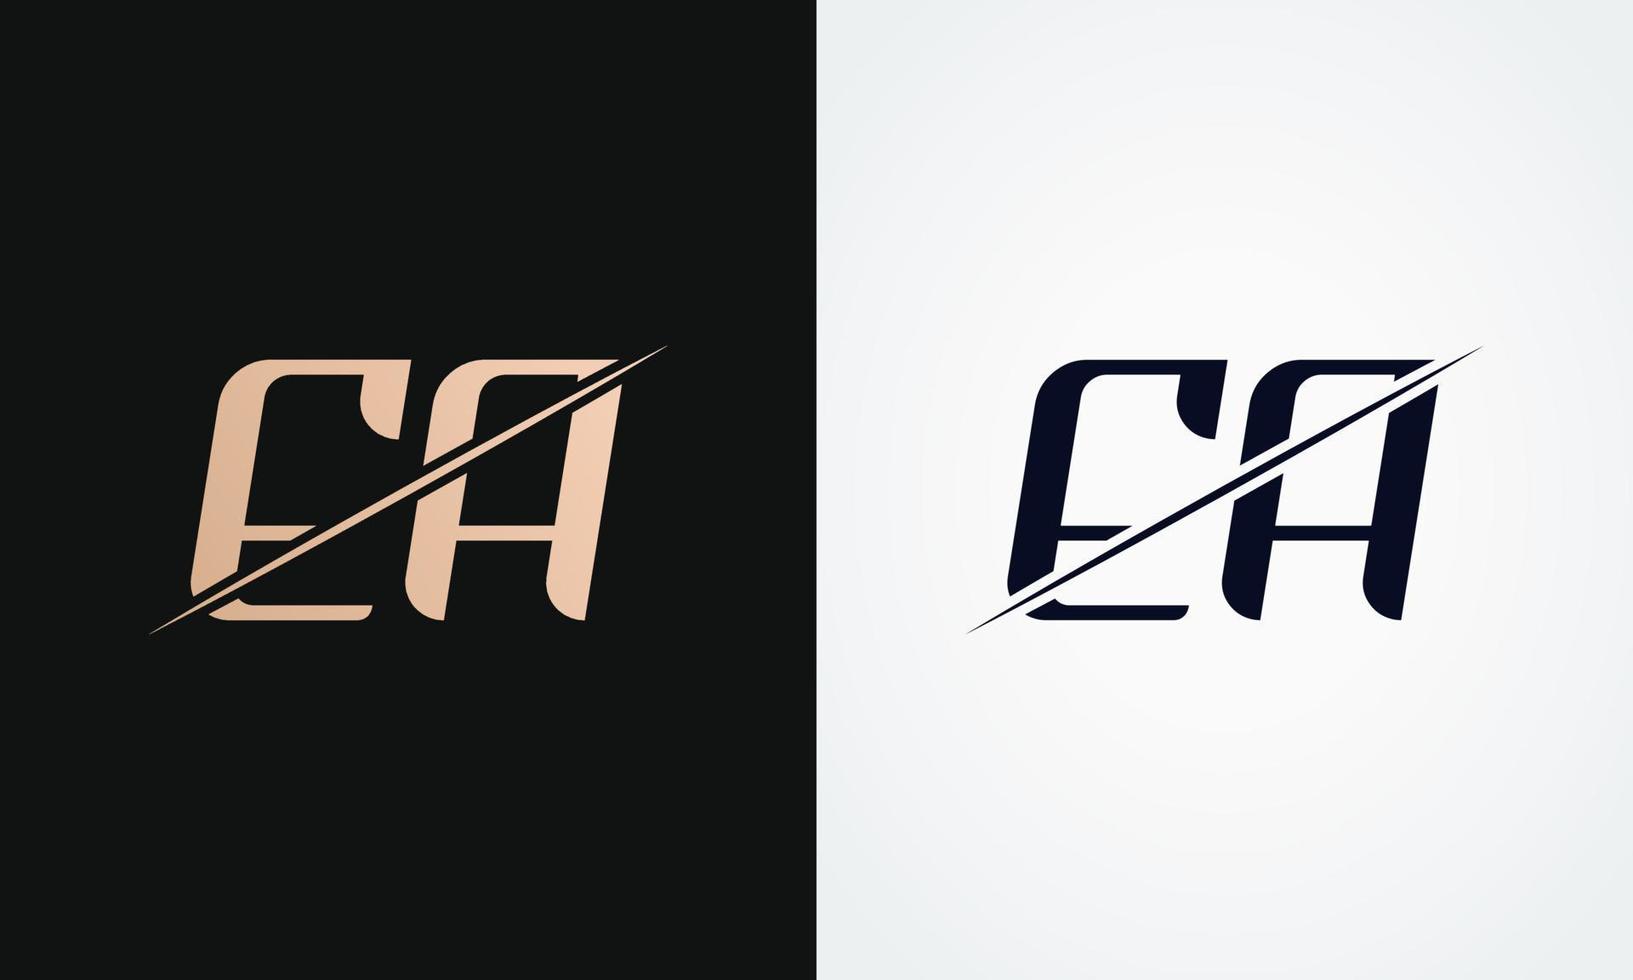 plantilla de vector de diseño de logotipo de letra ea. diseño de logotipo ea de letras doradas y negras